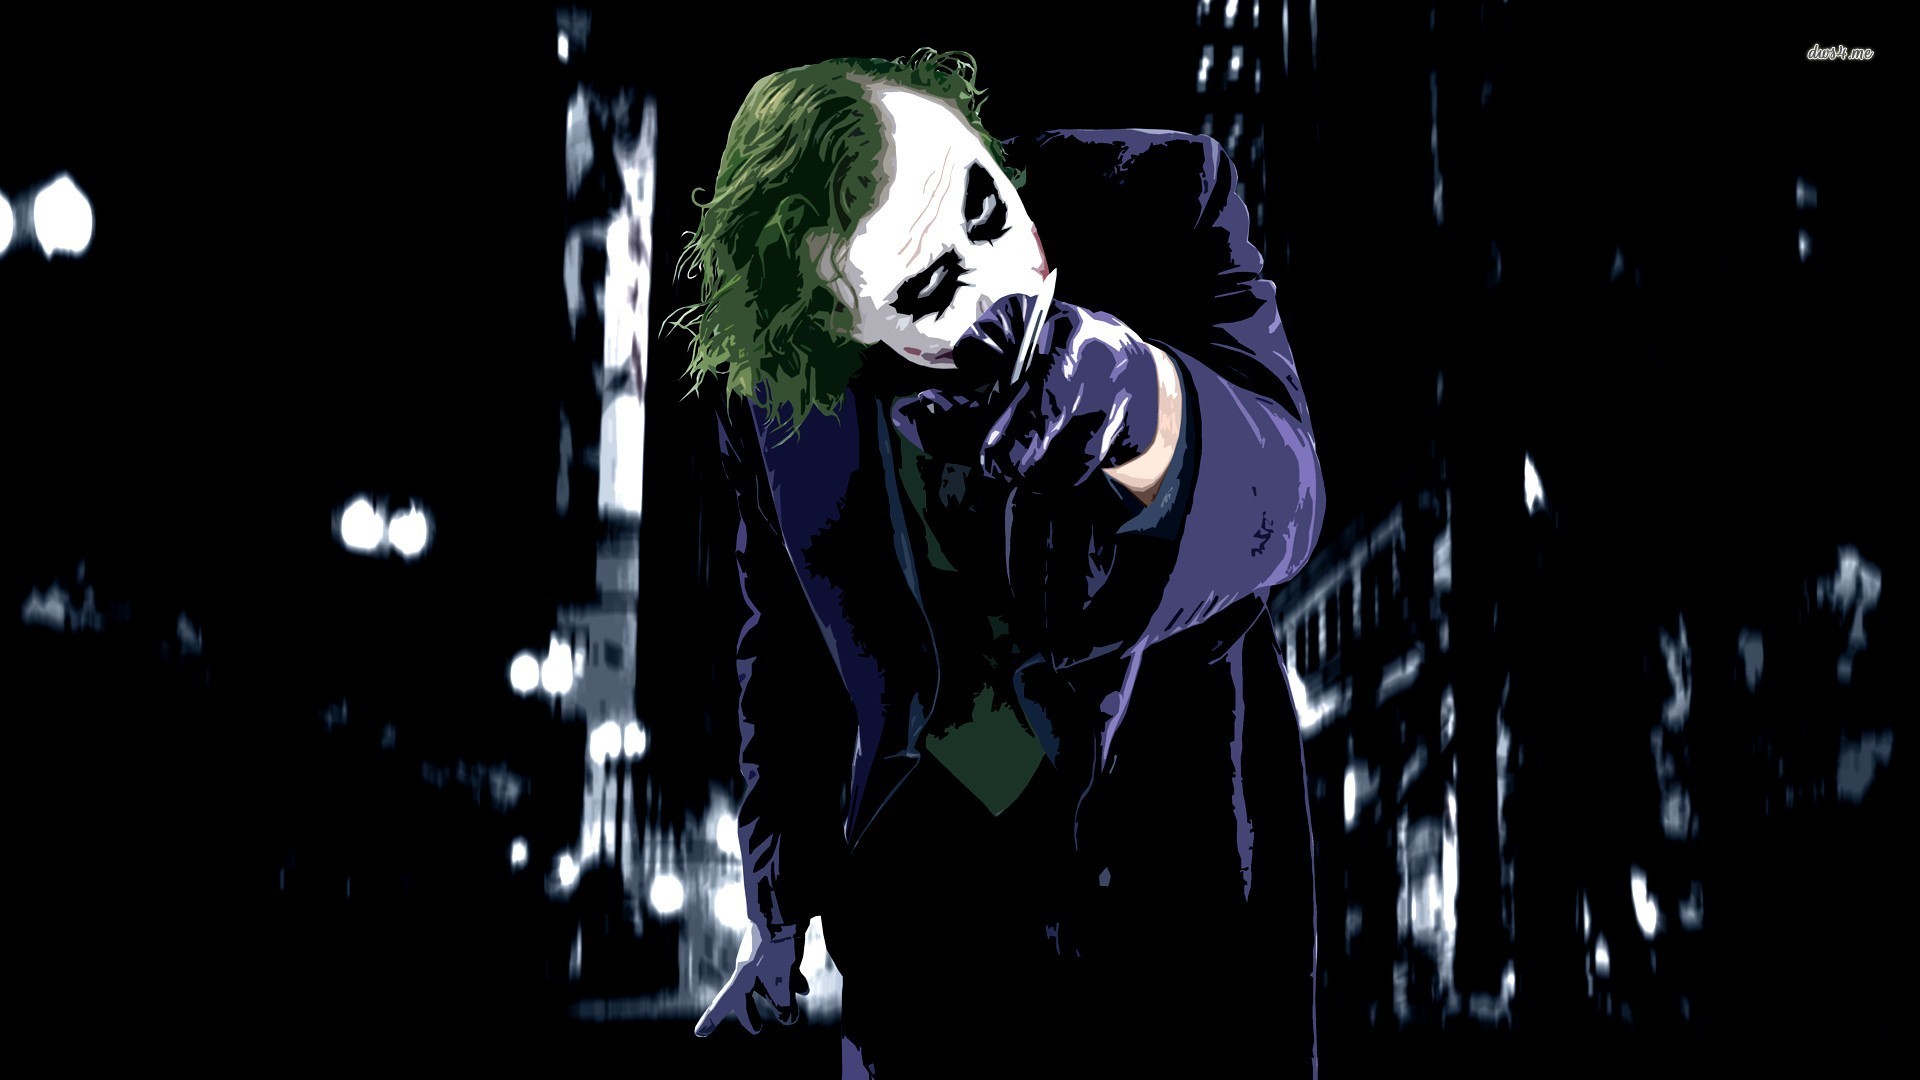 Dark Knight Movie Wallpaper Joker - HD Wallpaper 